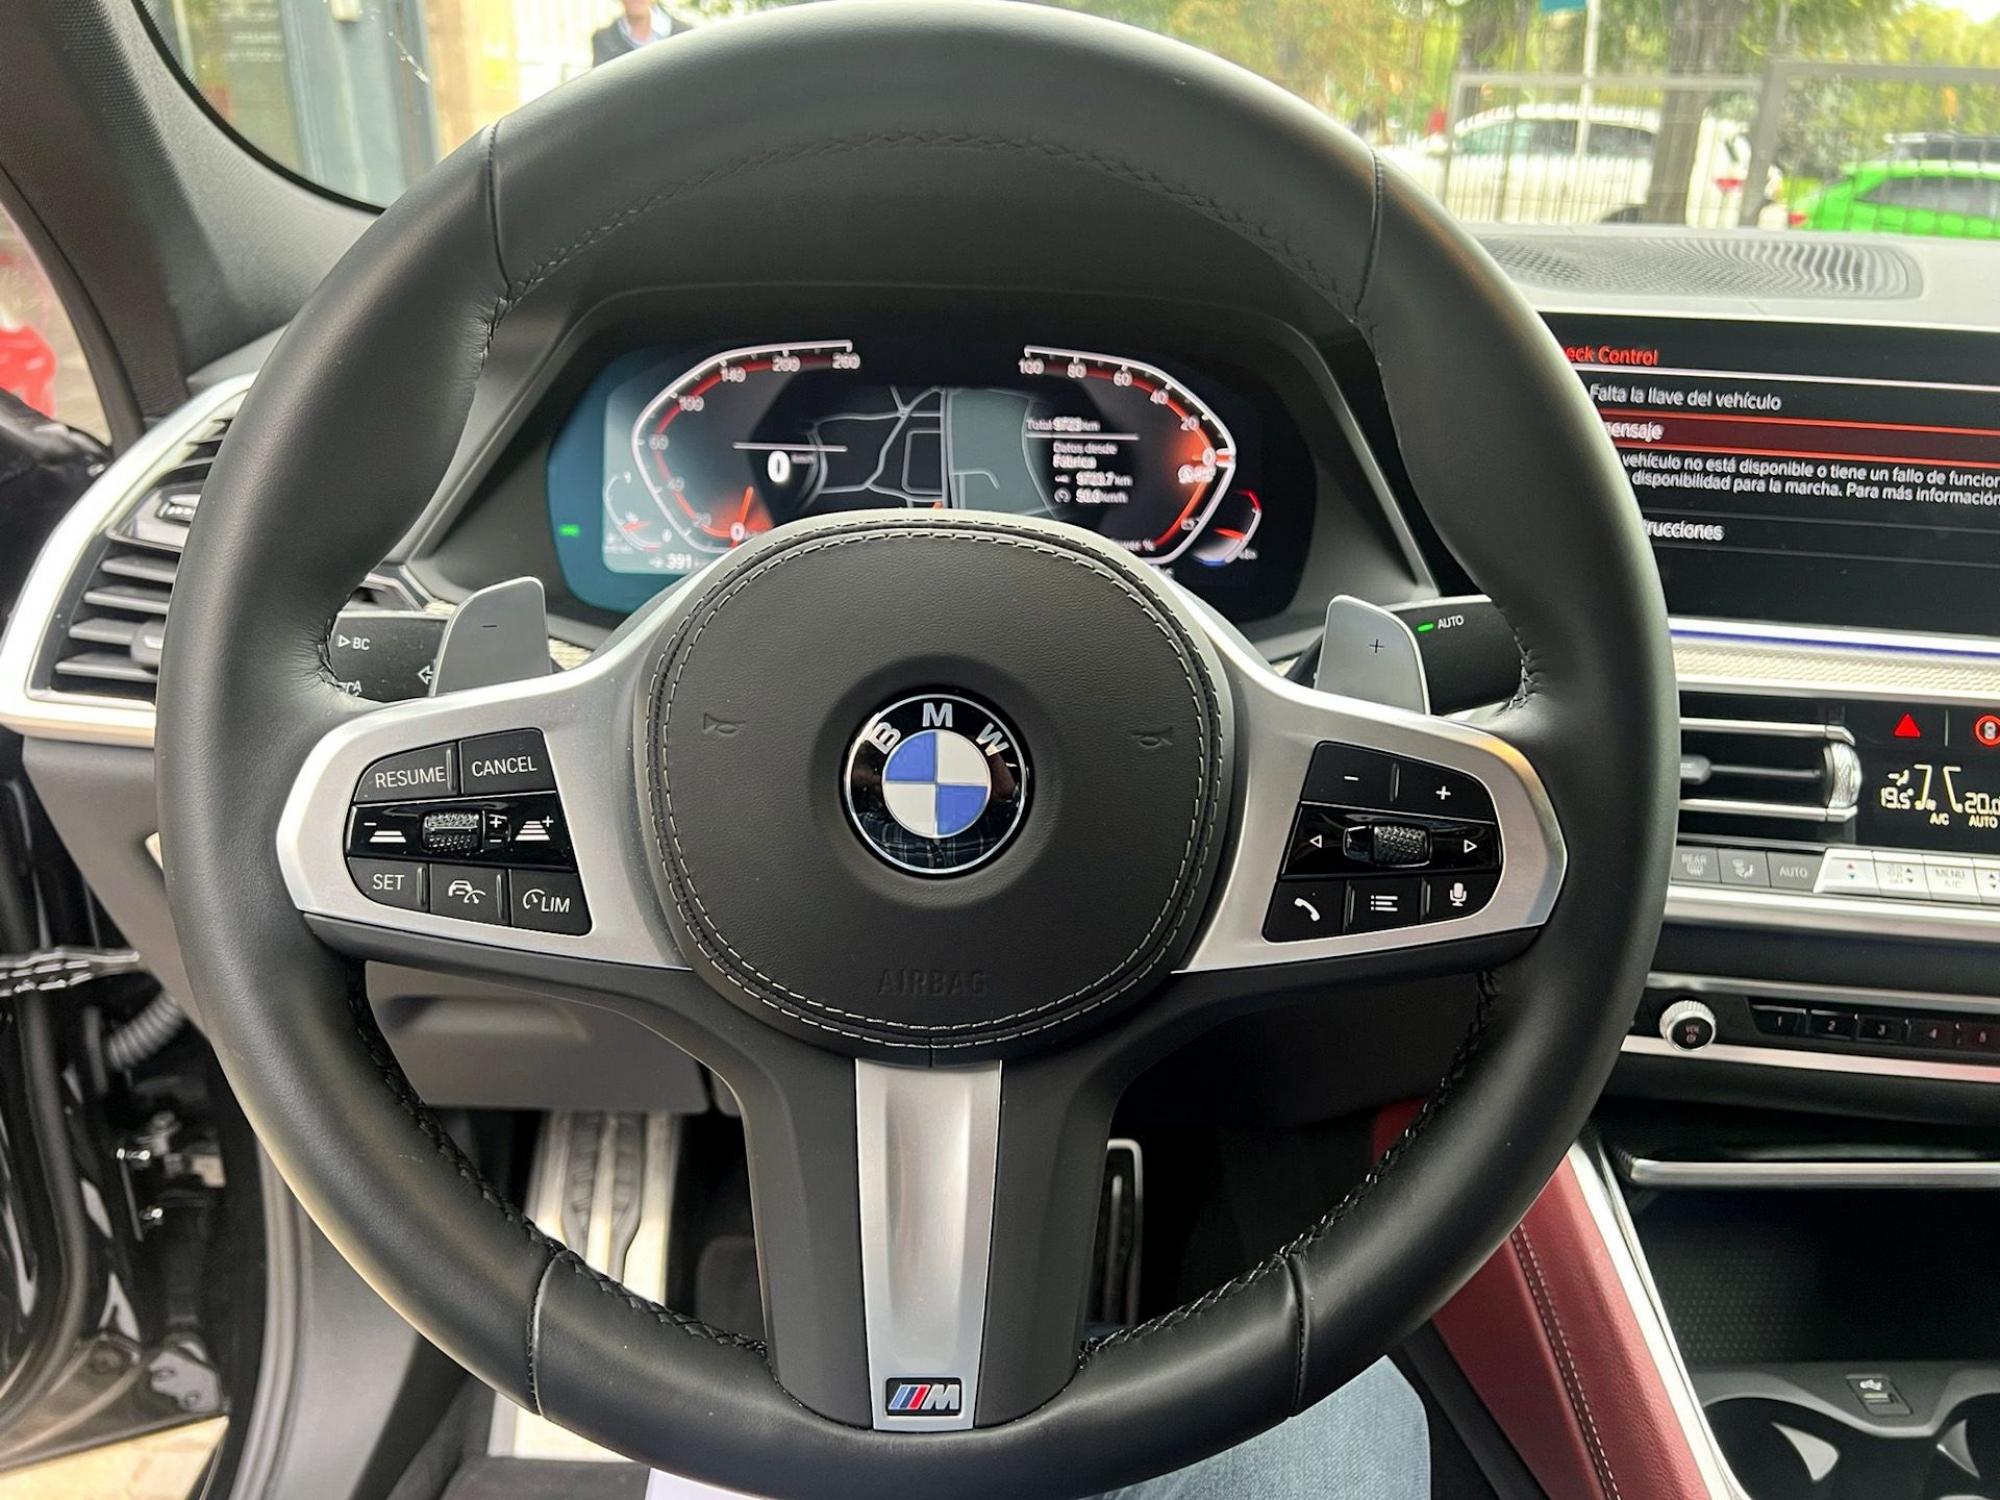 BMW X6 xDrive 40d -NACIONAL, IVA DEDUCIBLE-